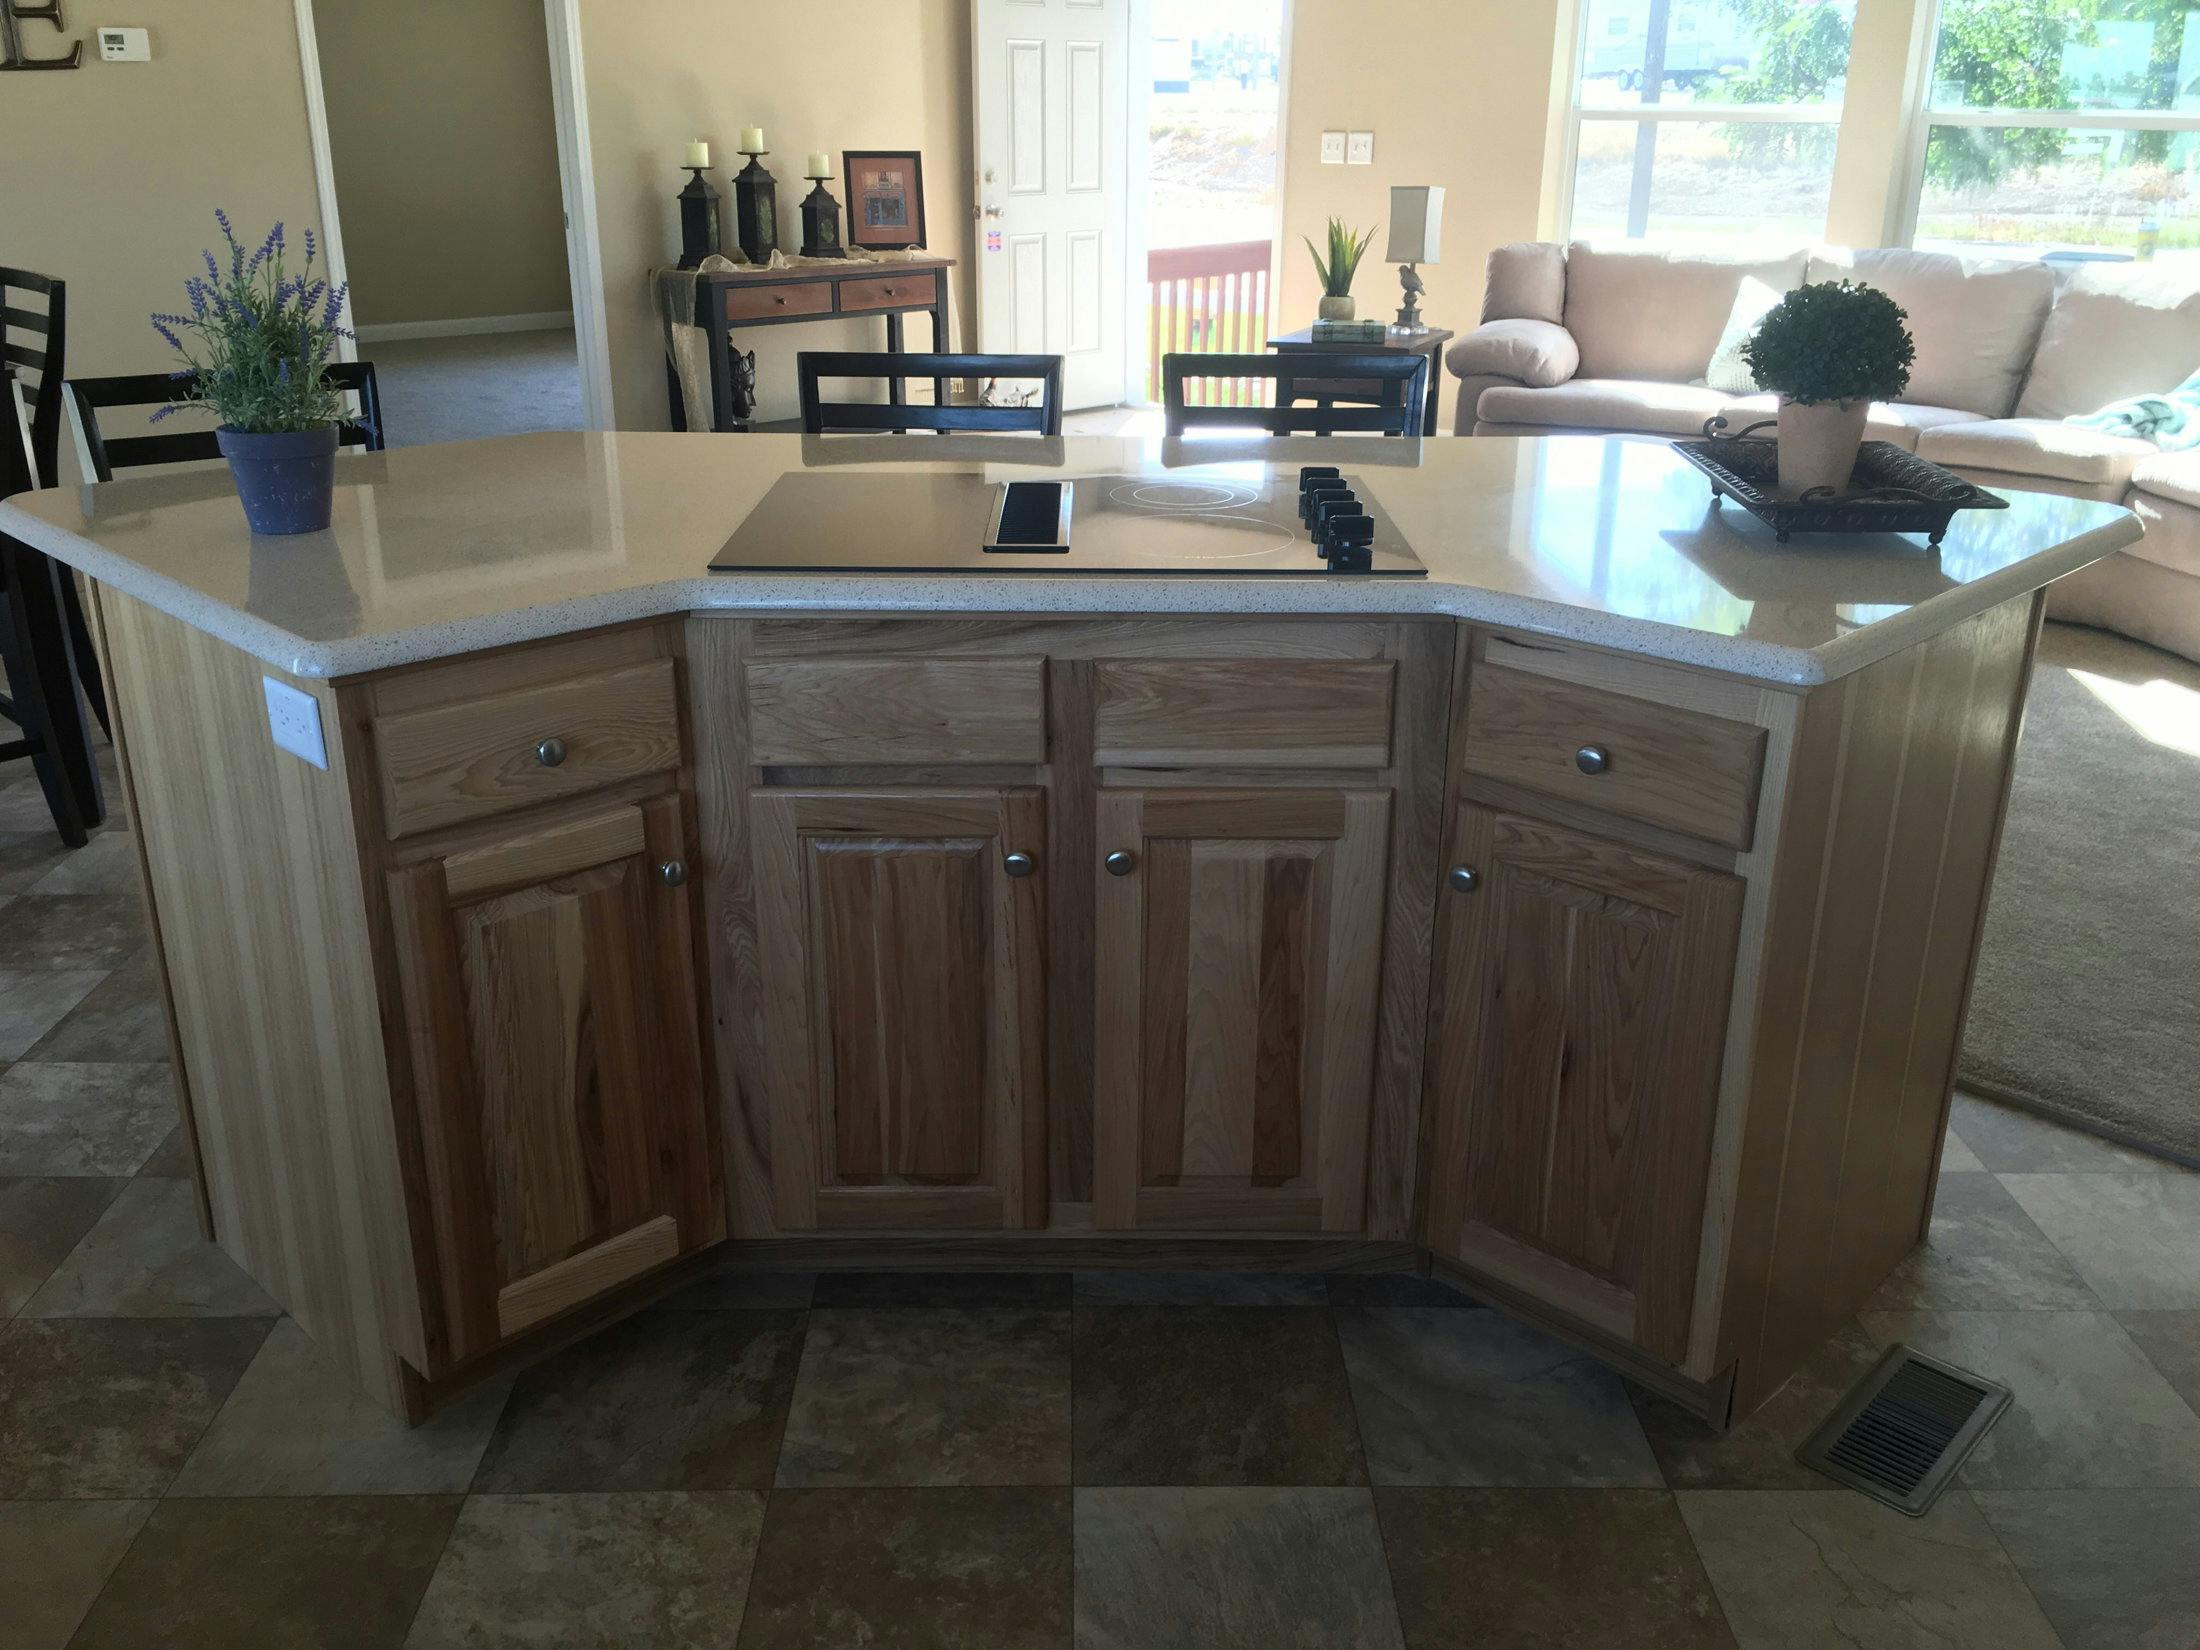 Pinehurst kitchen home features